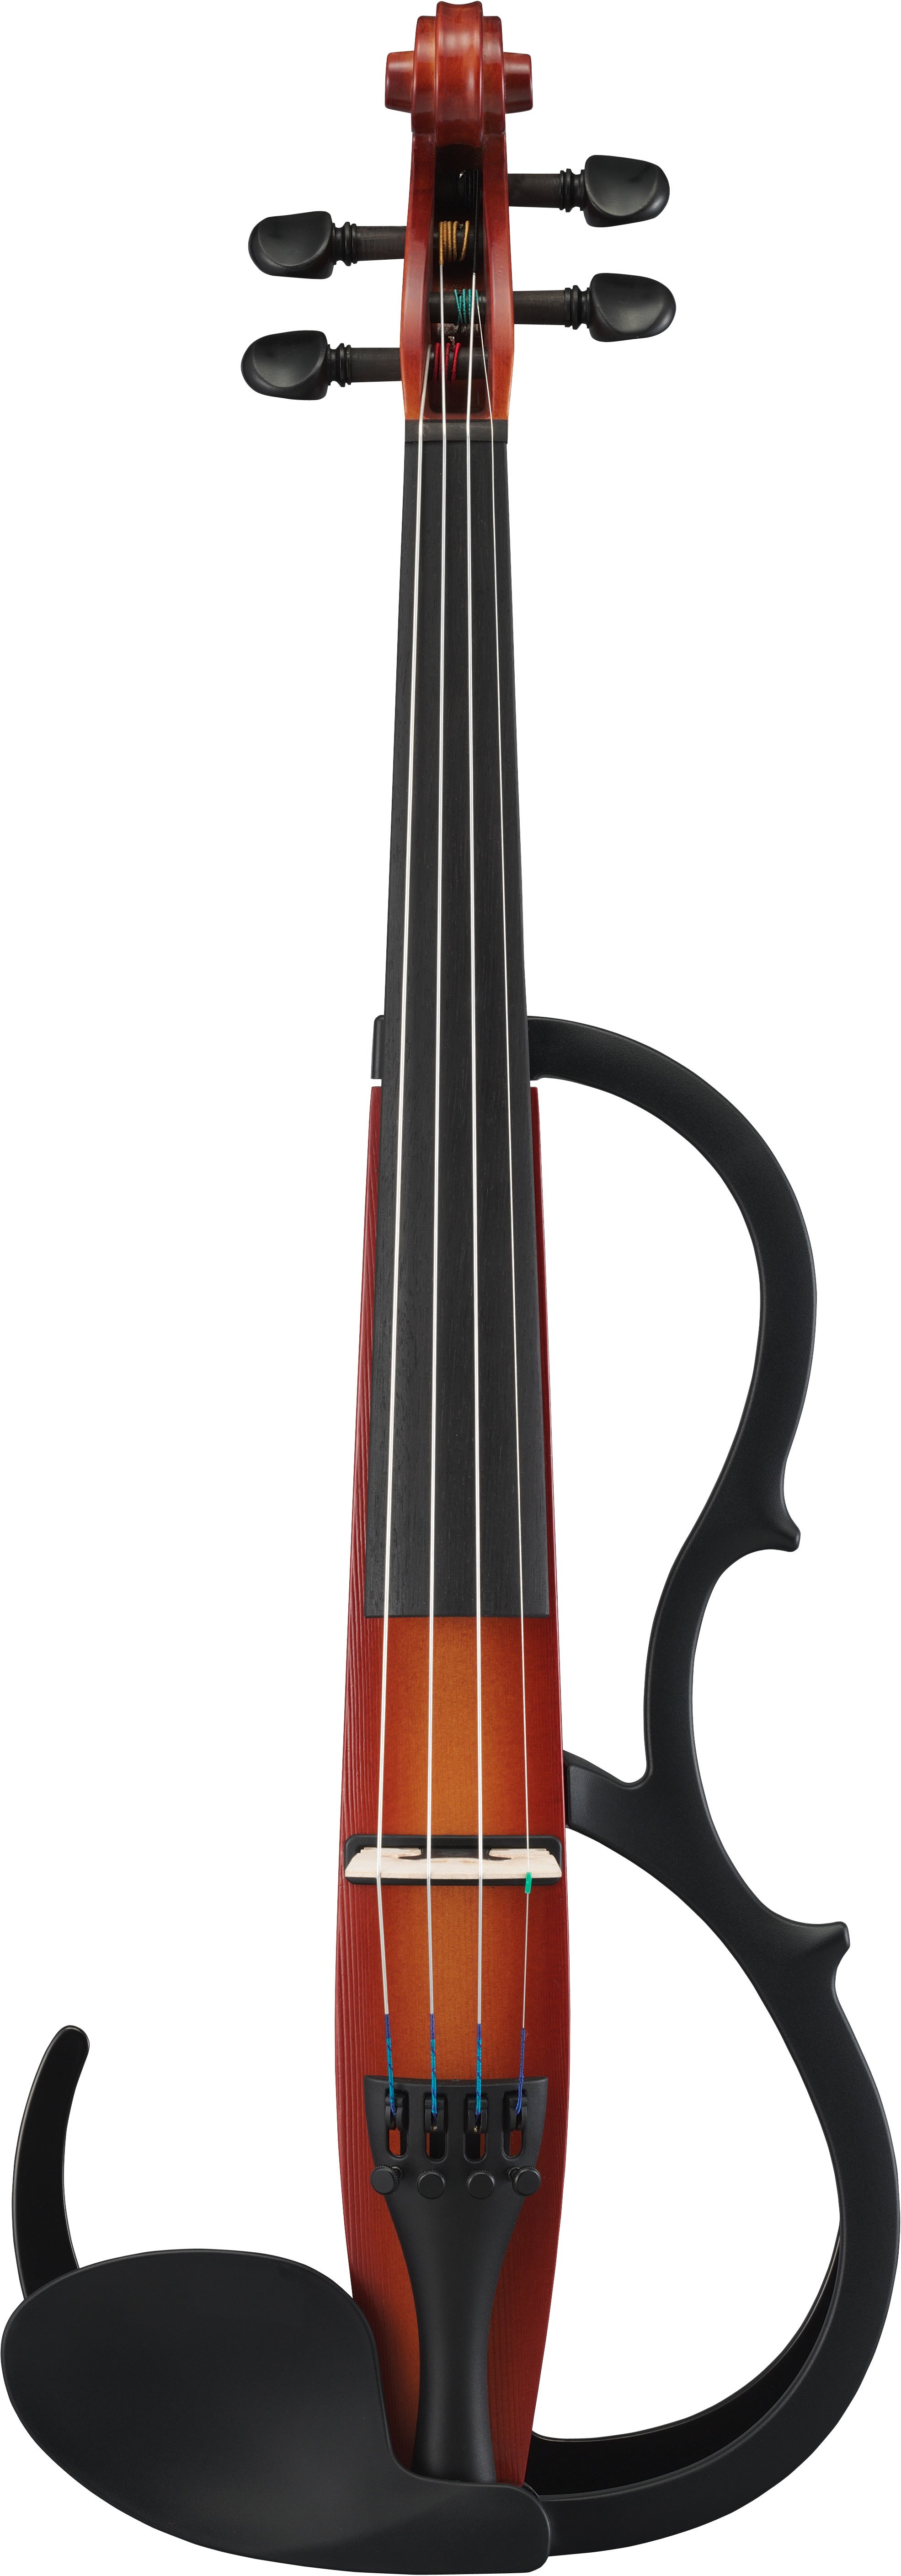 豊富な人気即決◆新品YAMAHA SV250 BR(ブラウン) サイレントバイオリン バイオリン